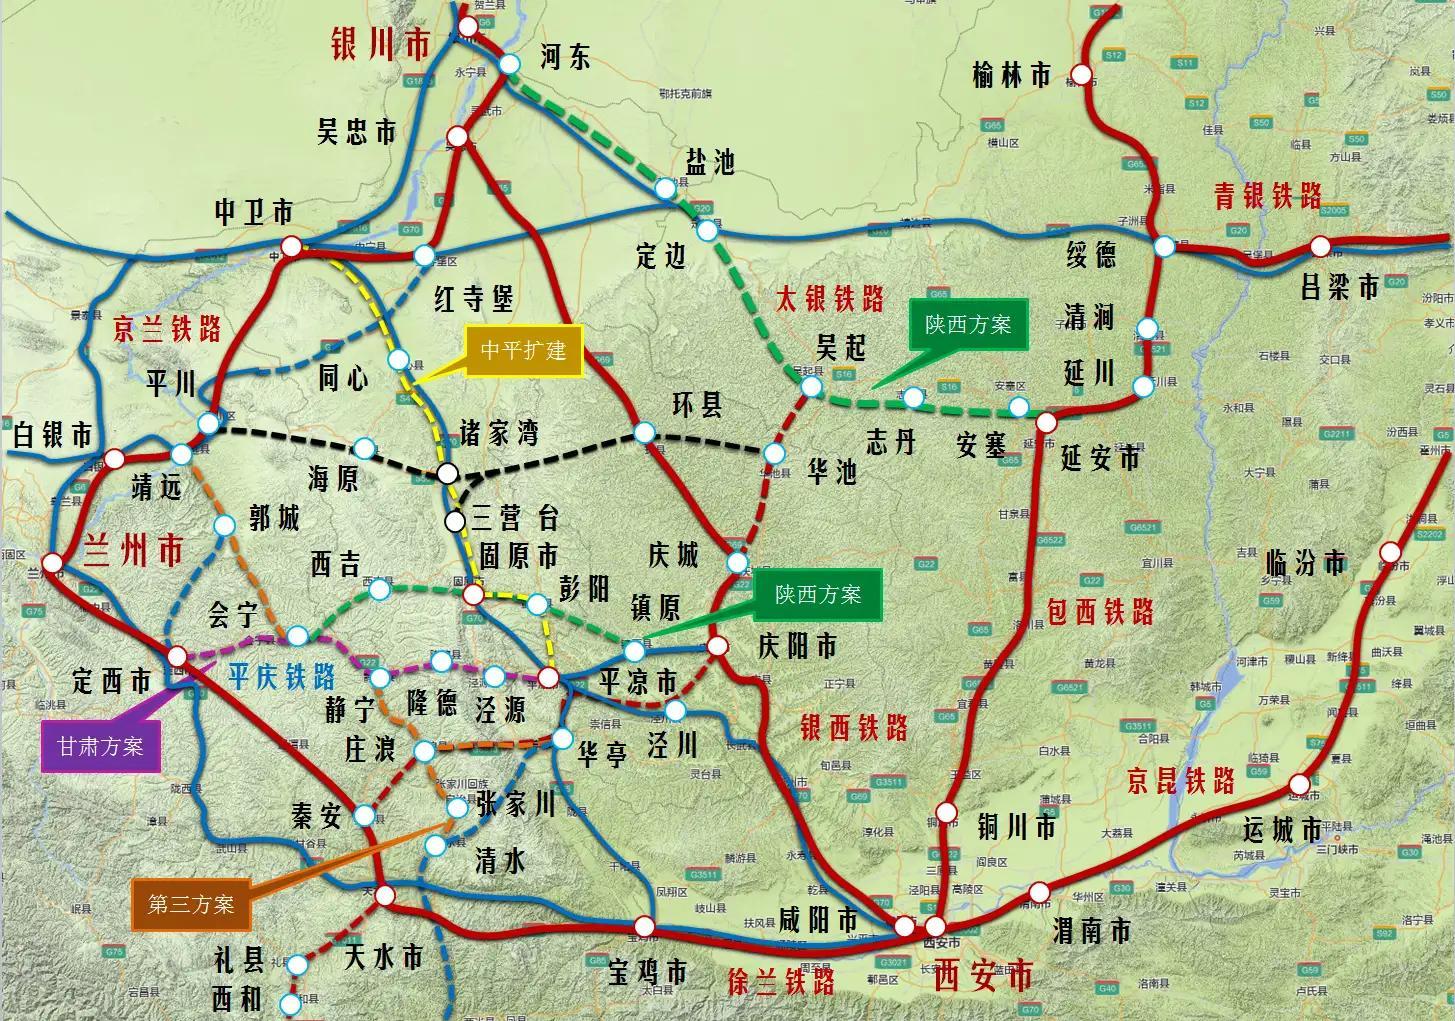 甘肃宁夏护路意识强烈,定固平庆铁路走向可能发生巨大变化